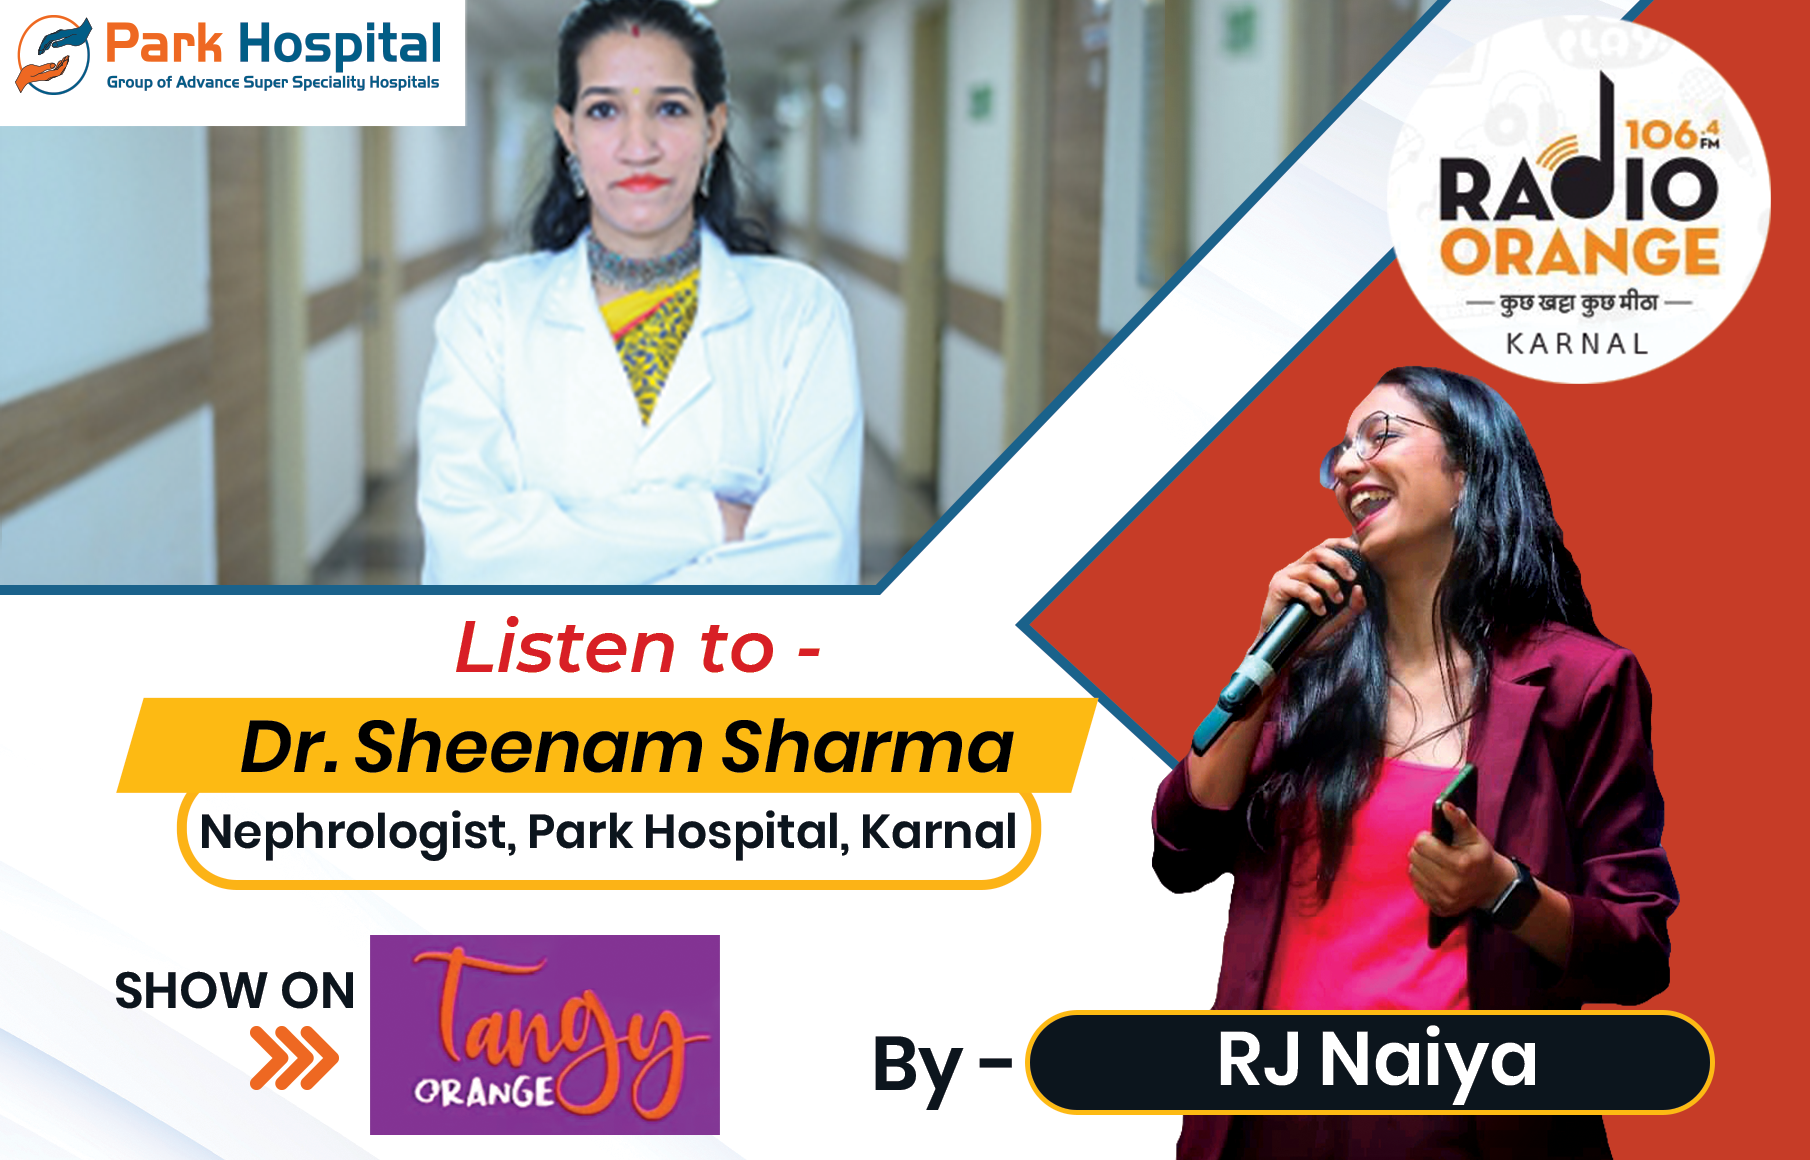 Dr. Sheenam Sharma in conversation with RJ Naiya | Park Hospital | Radio Orange